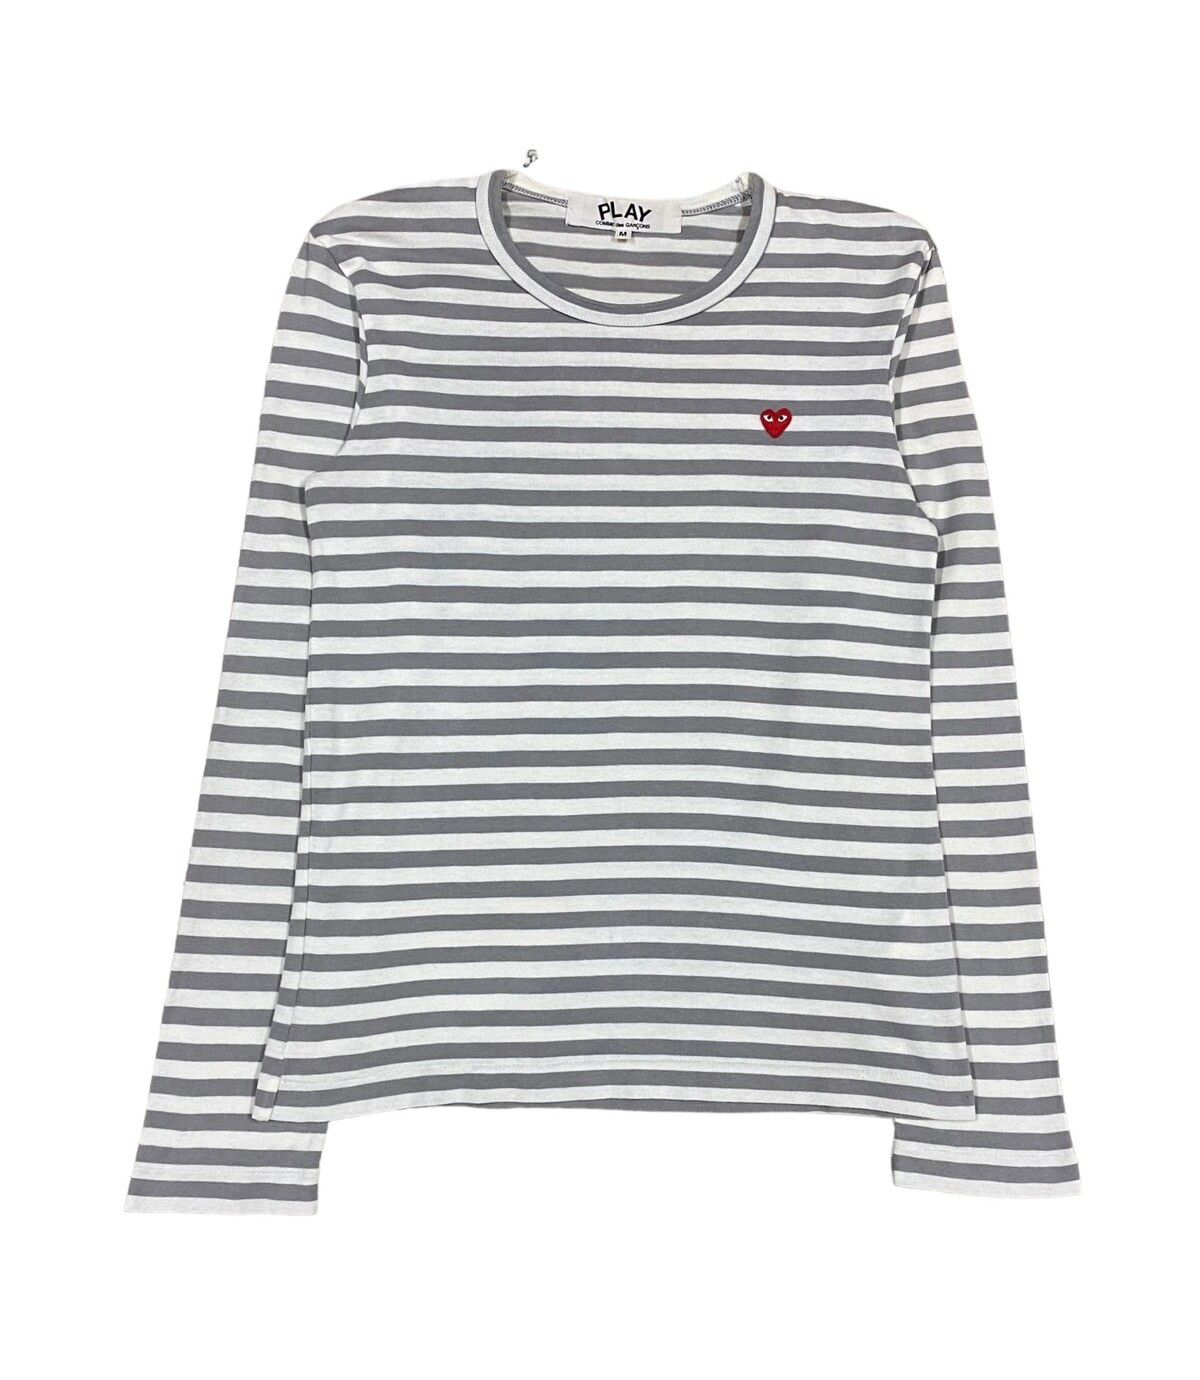 AD2015 Comme Des Garçons Play Striped Longsleeve Shirt - 1